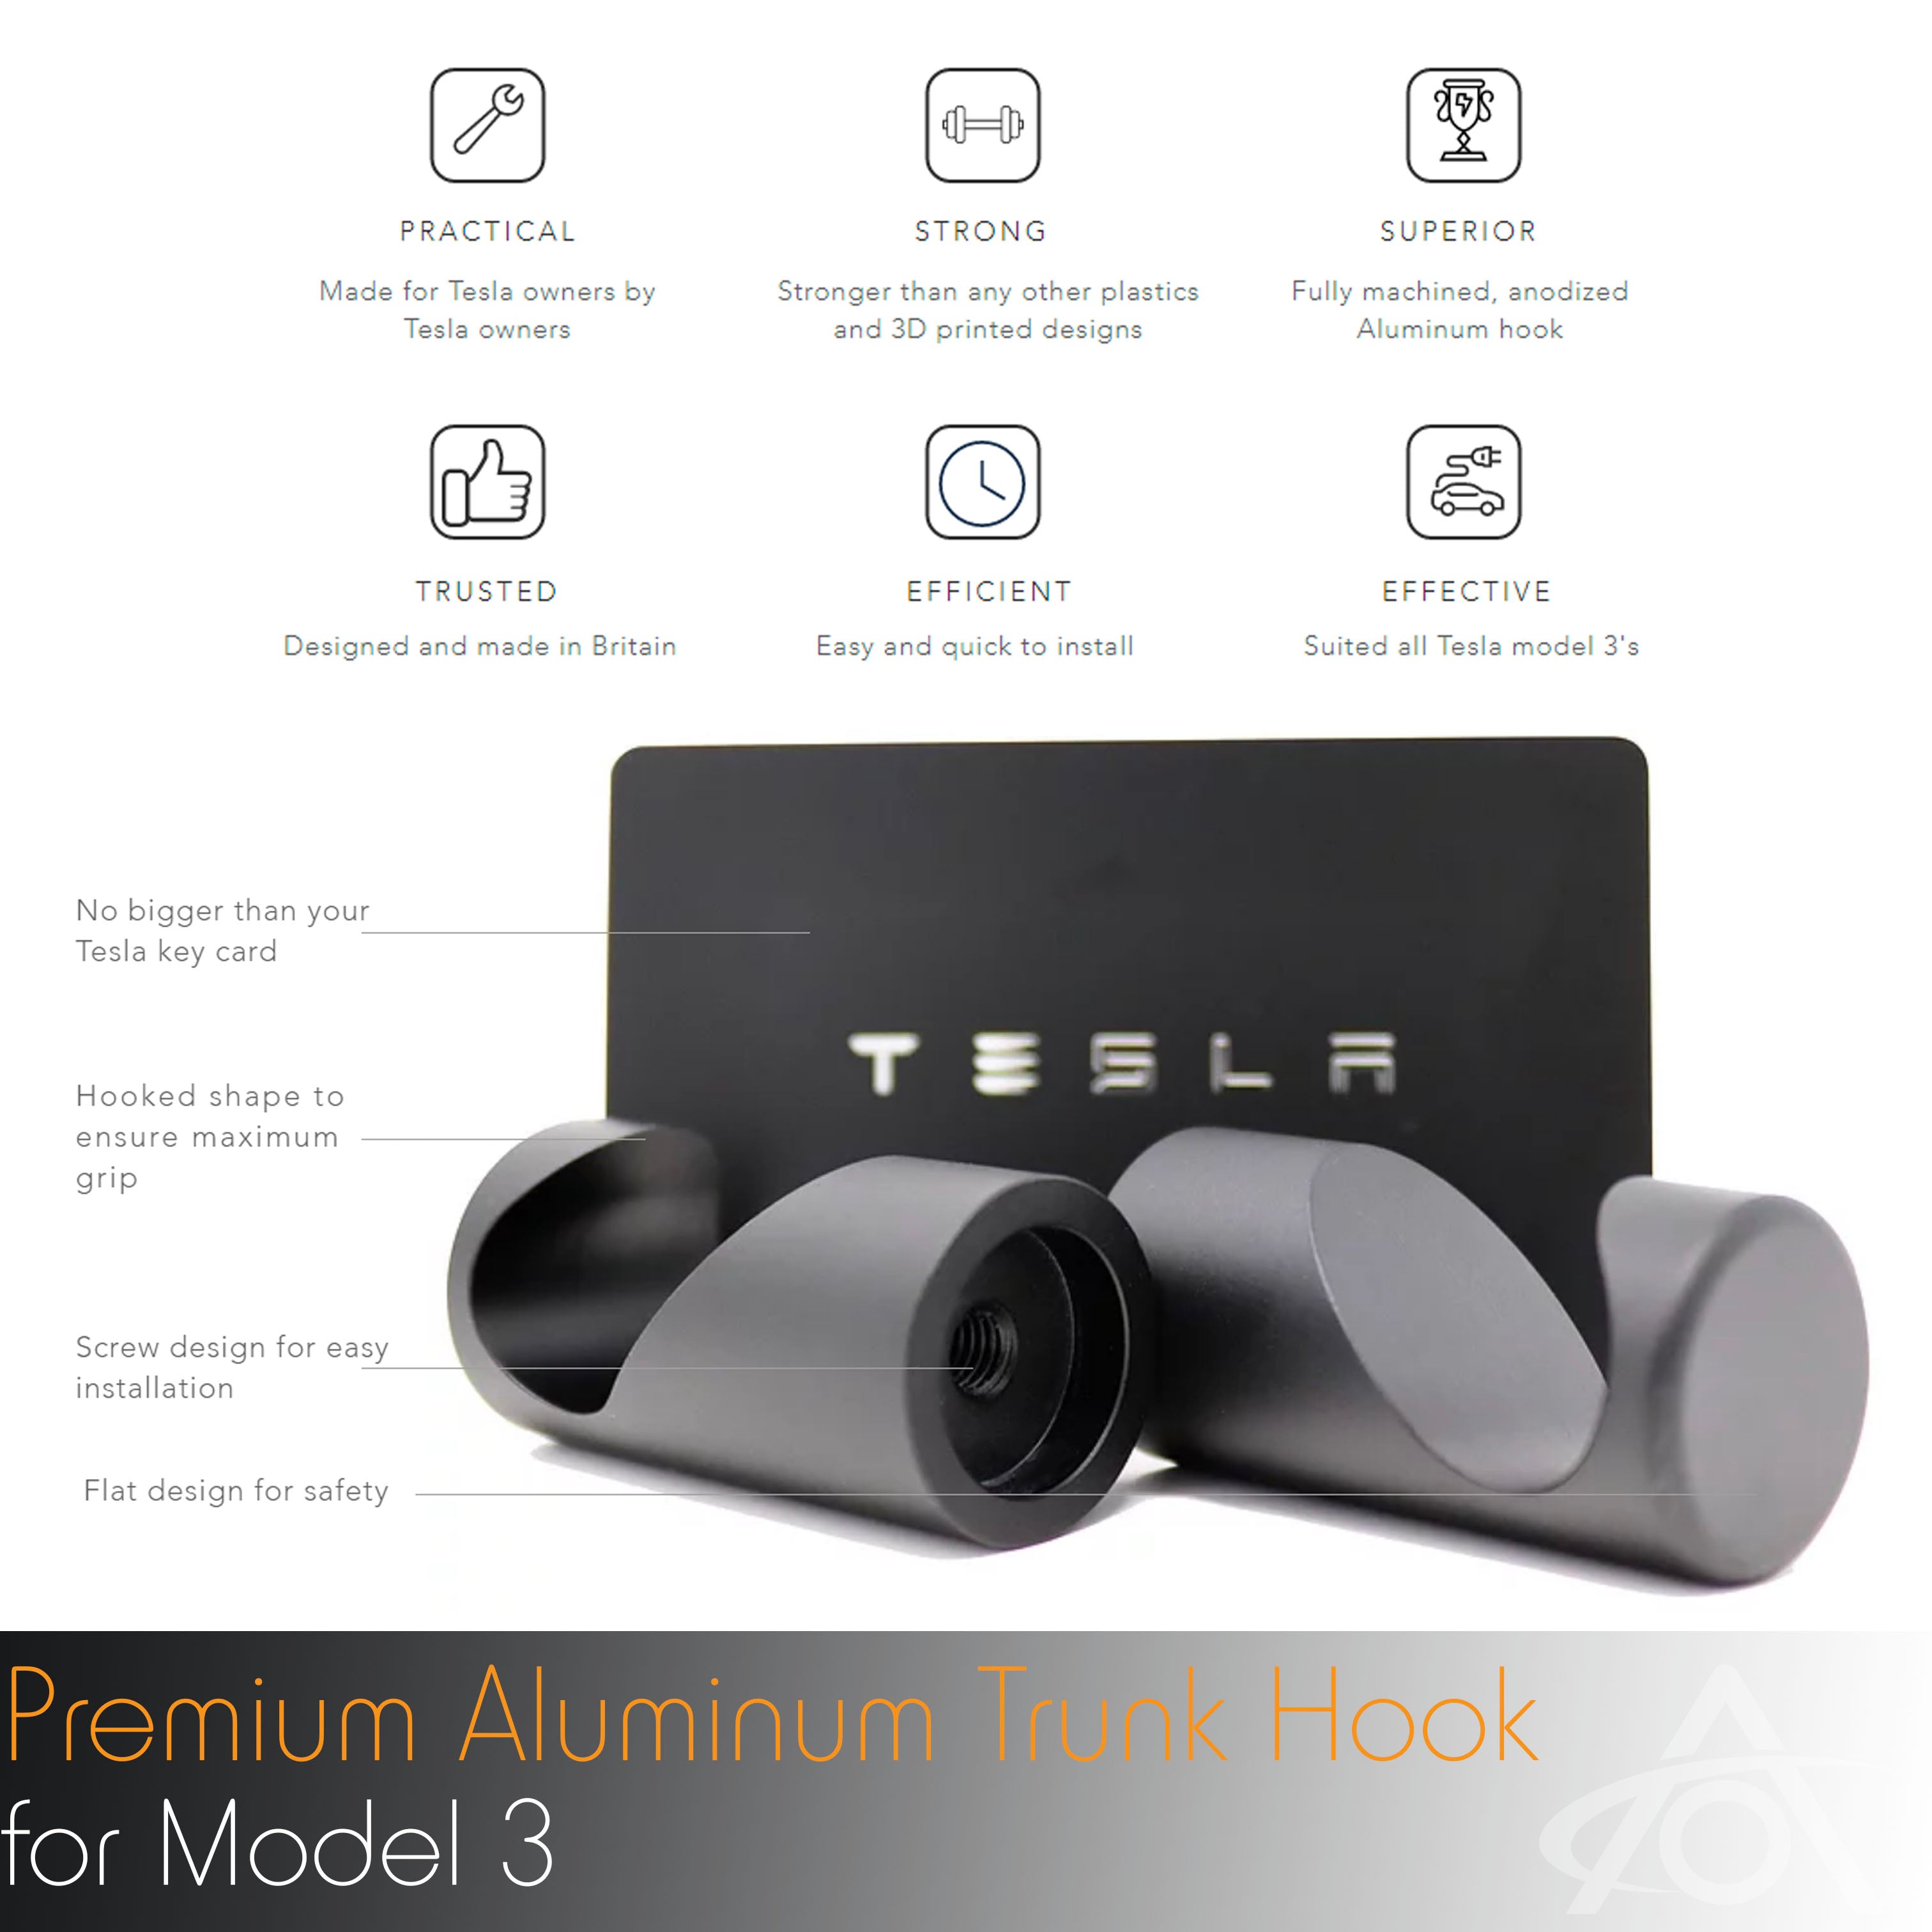 Premium Aluminum Trunk Hook